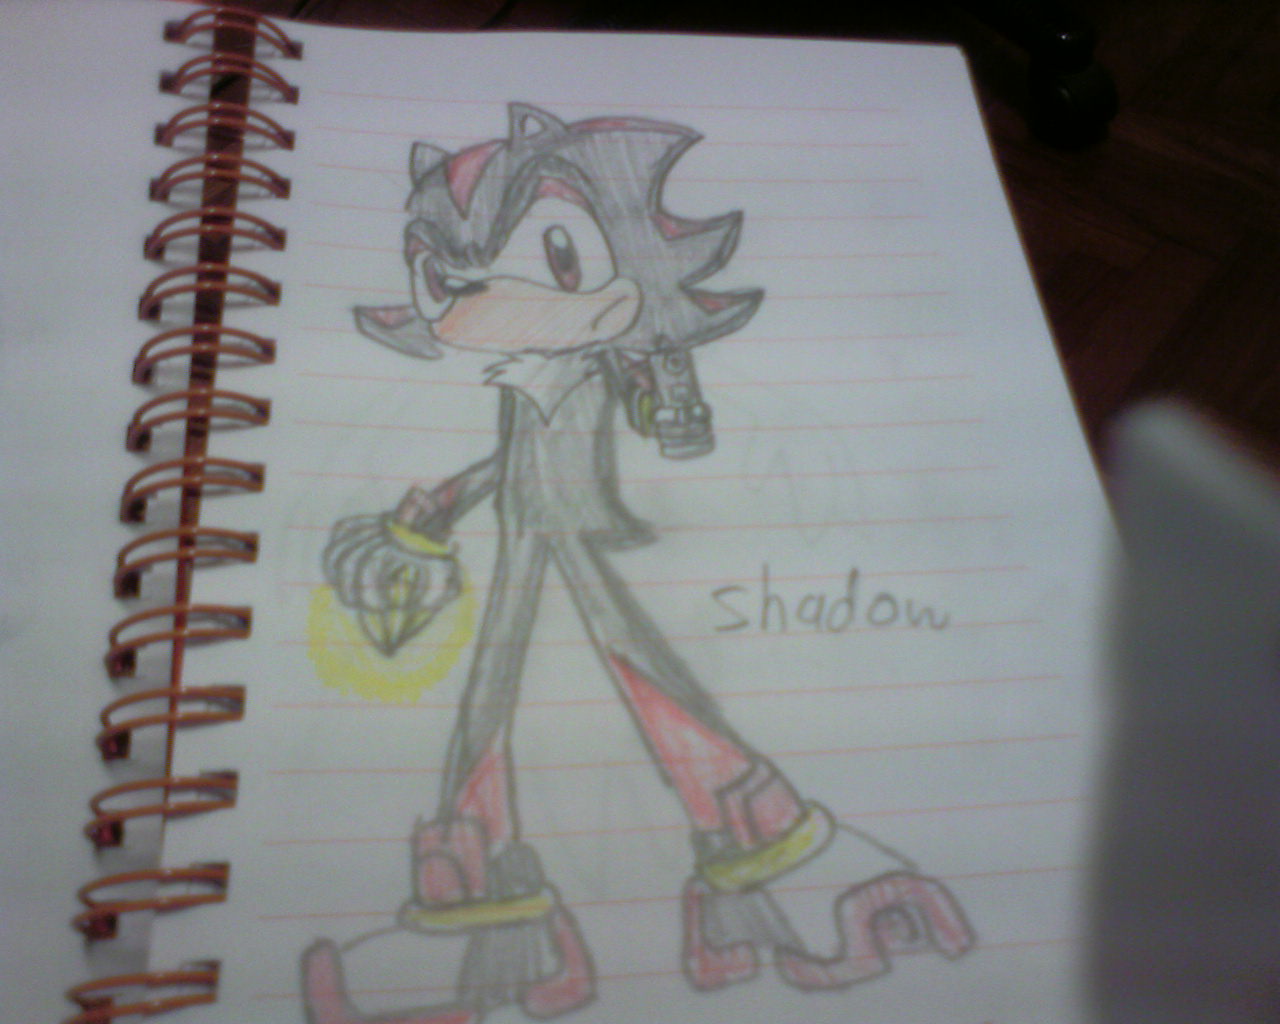 Shadow by maxTHEhedgehog